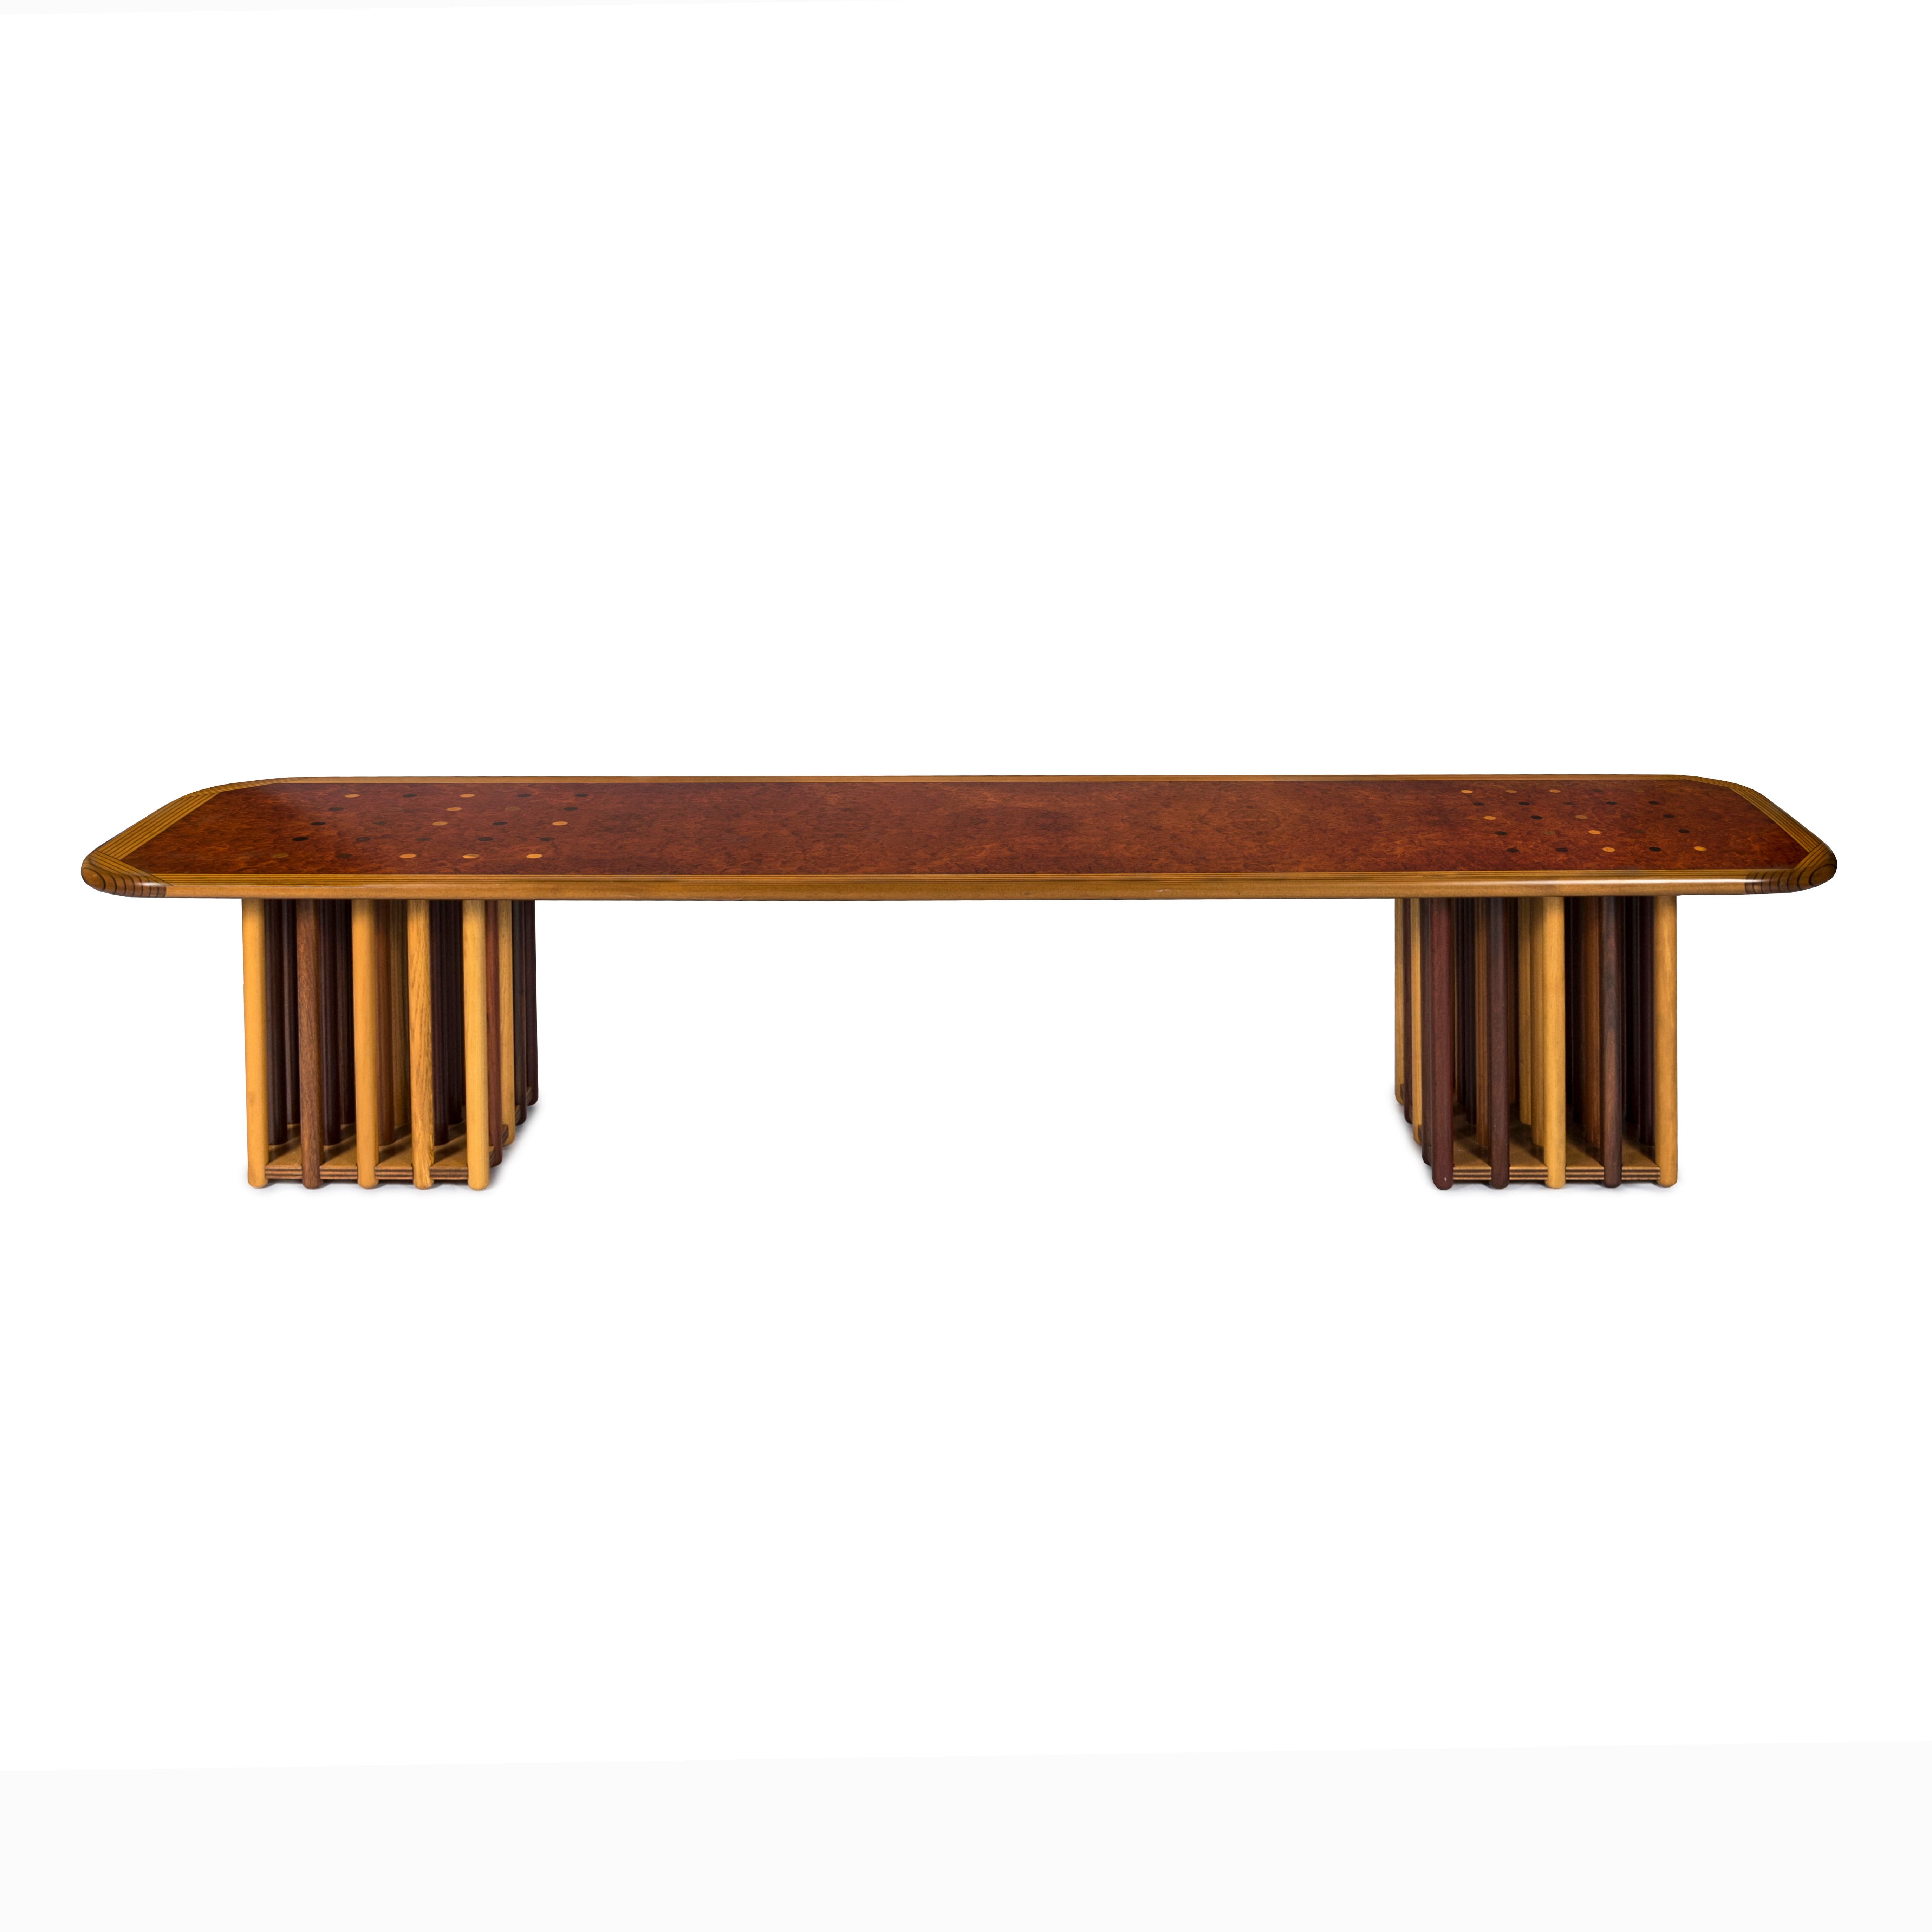 La table basse Scarpa d'Afra & Tobia est un chef-d'œuvre dans le domaine du design mobilier, incarnant la fusion de la brillance esthétique et de l'ingéniosité fonctionnelle. Fabriquée à partir d'un mélange harmonieux de ronce d'érable, de bouleau,